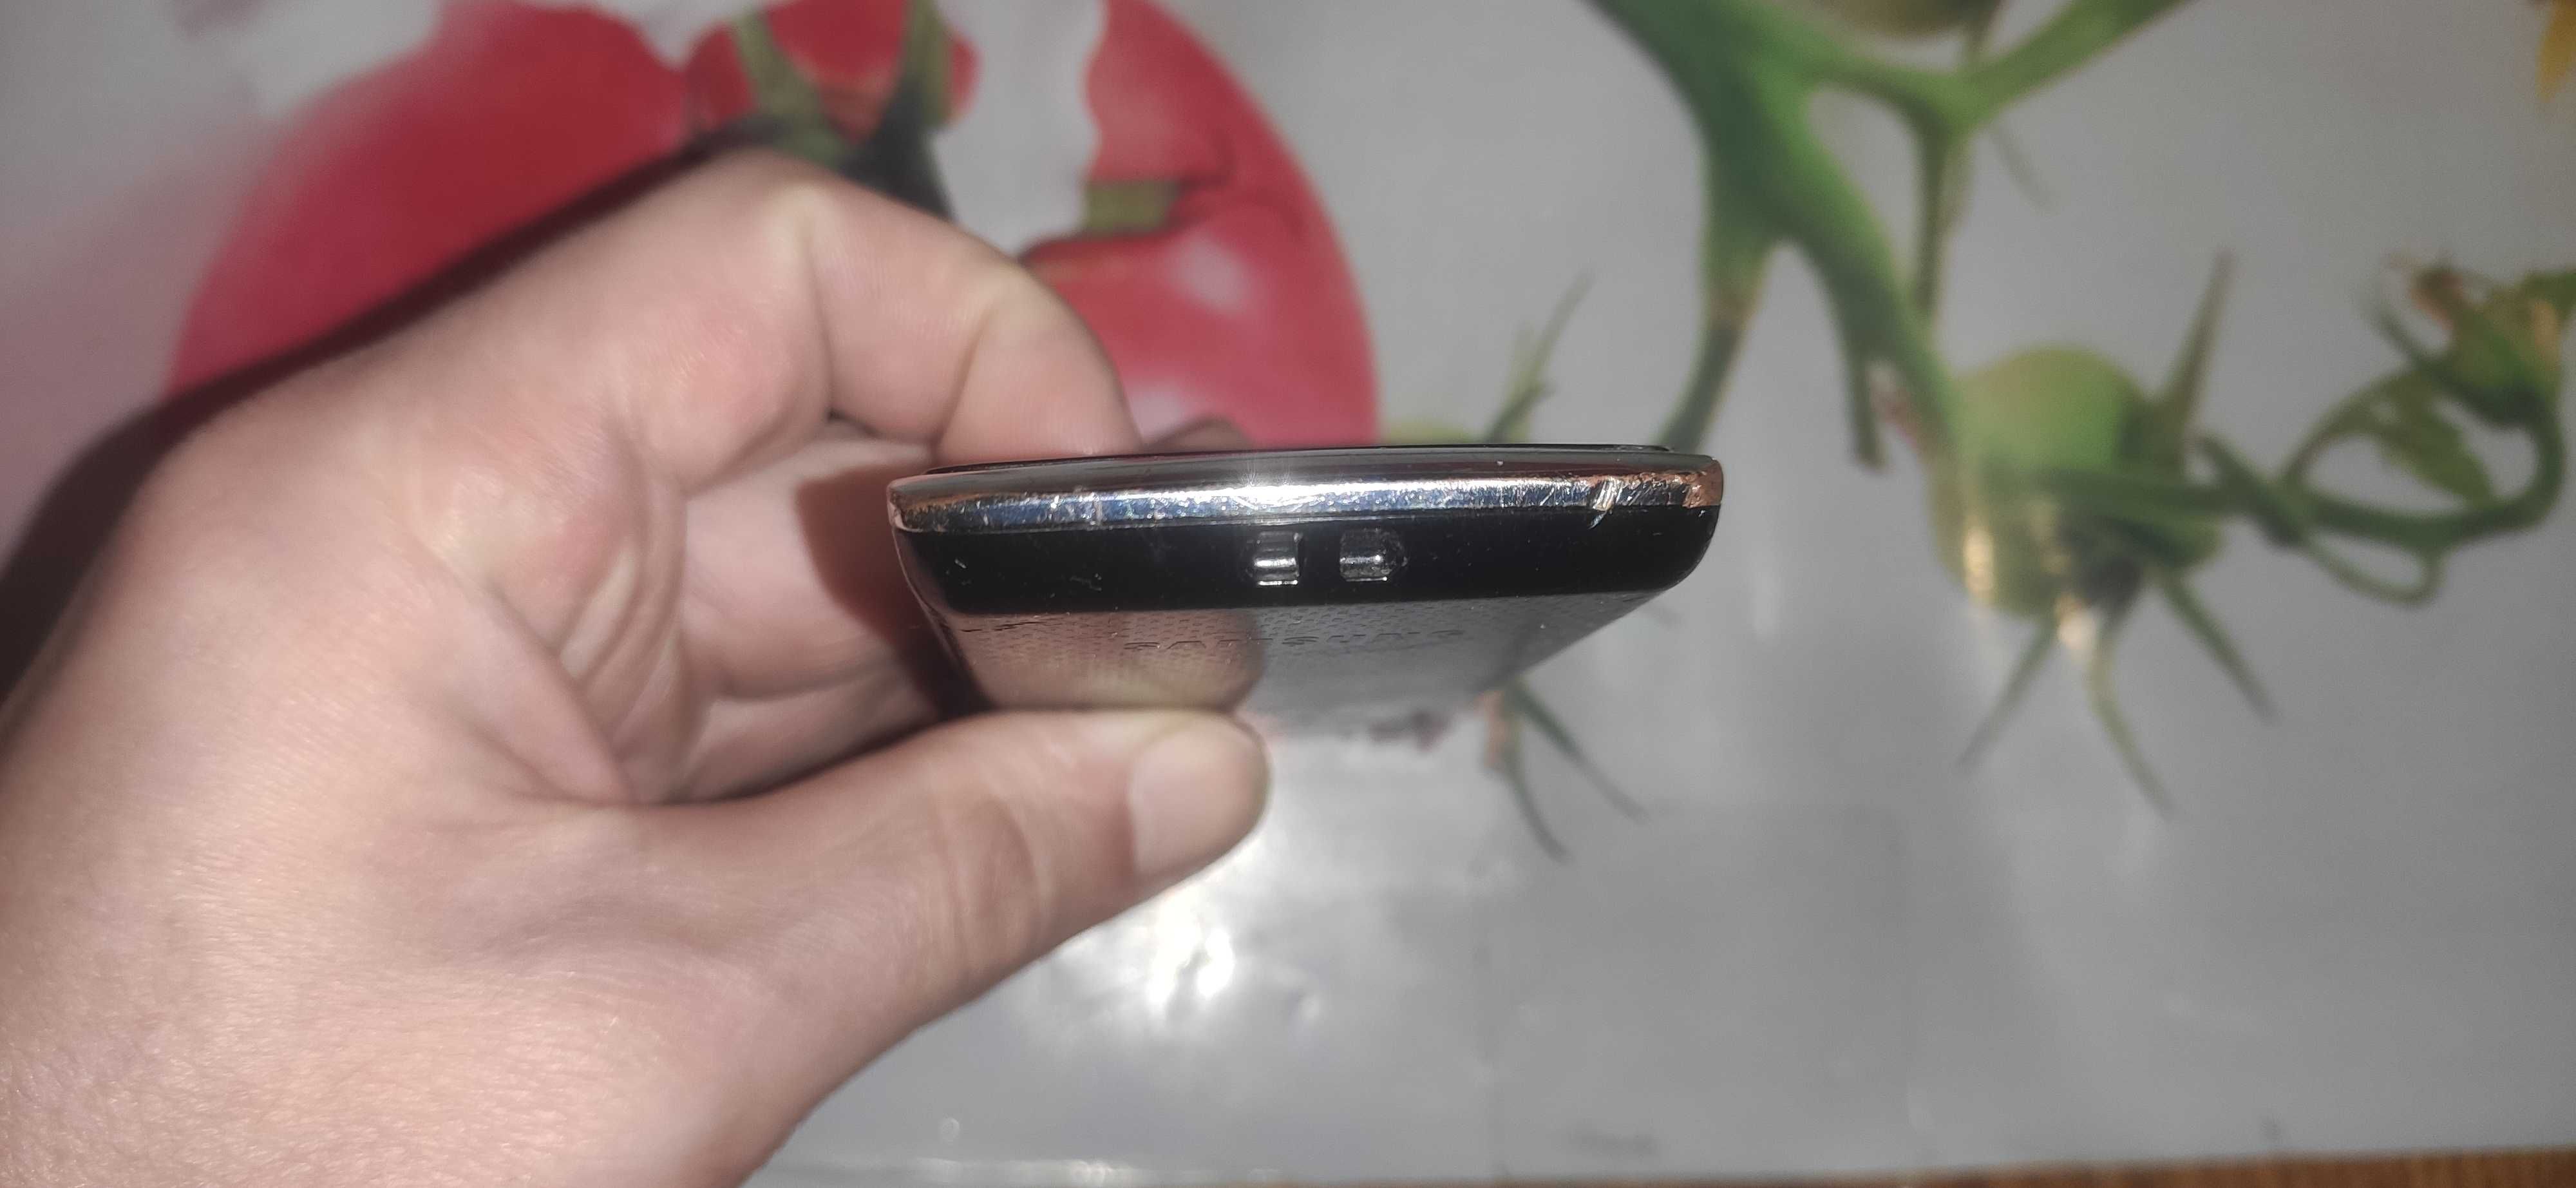 Плеер Samsung YP-Q2 на запчасти или под восстановление